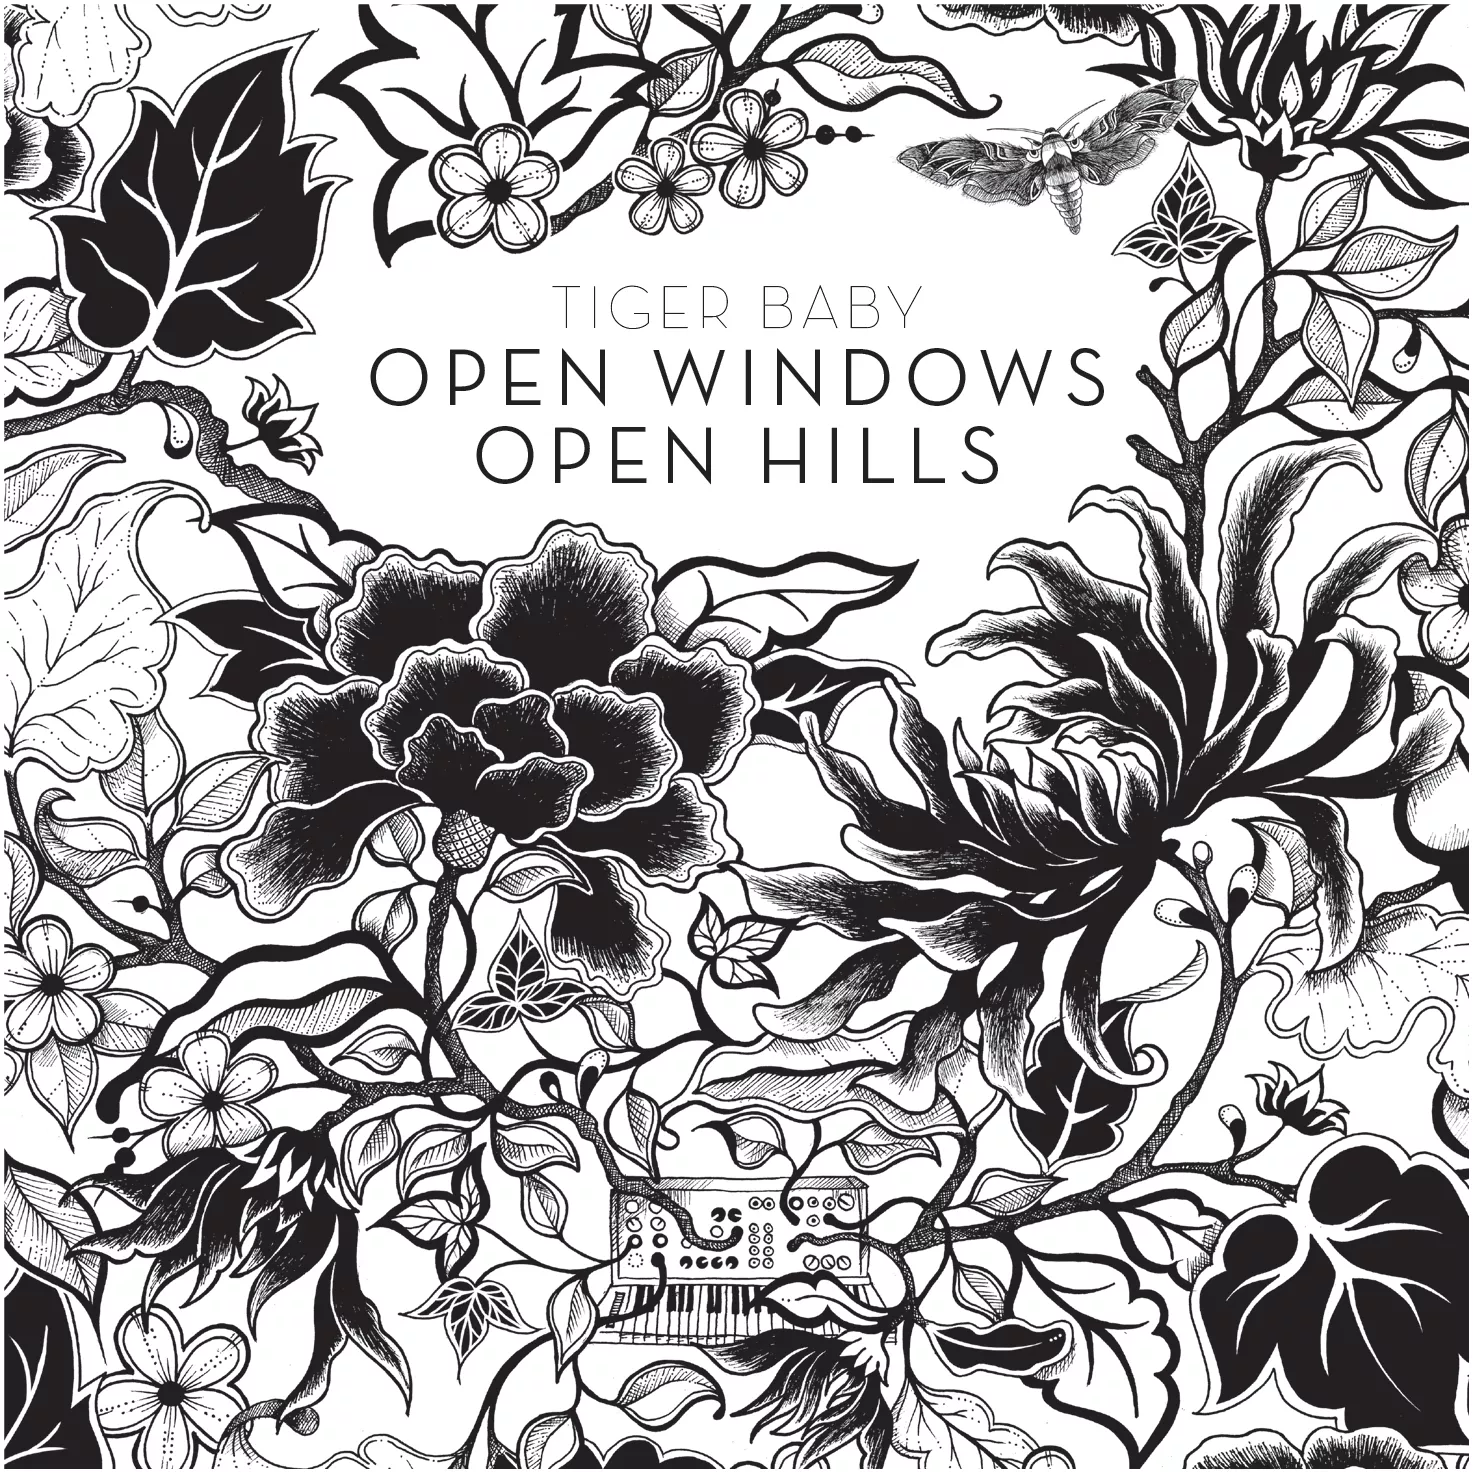 Open Windows Open Hills - Tiger Baby